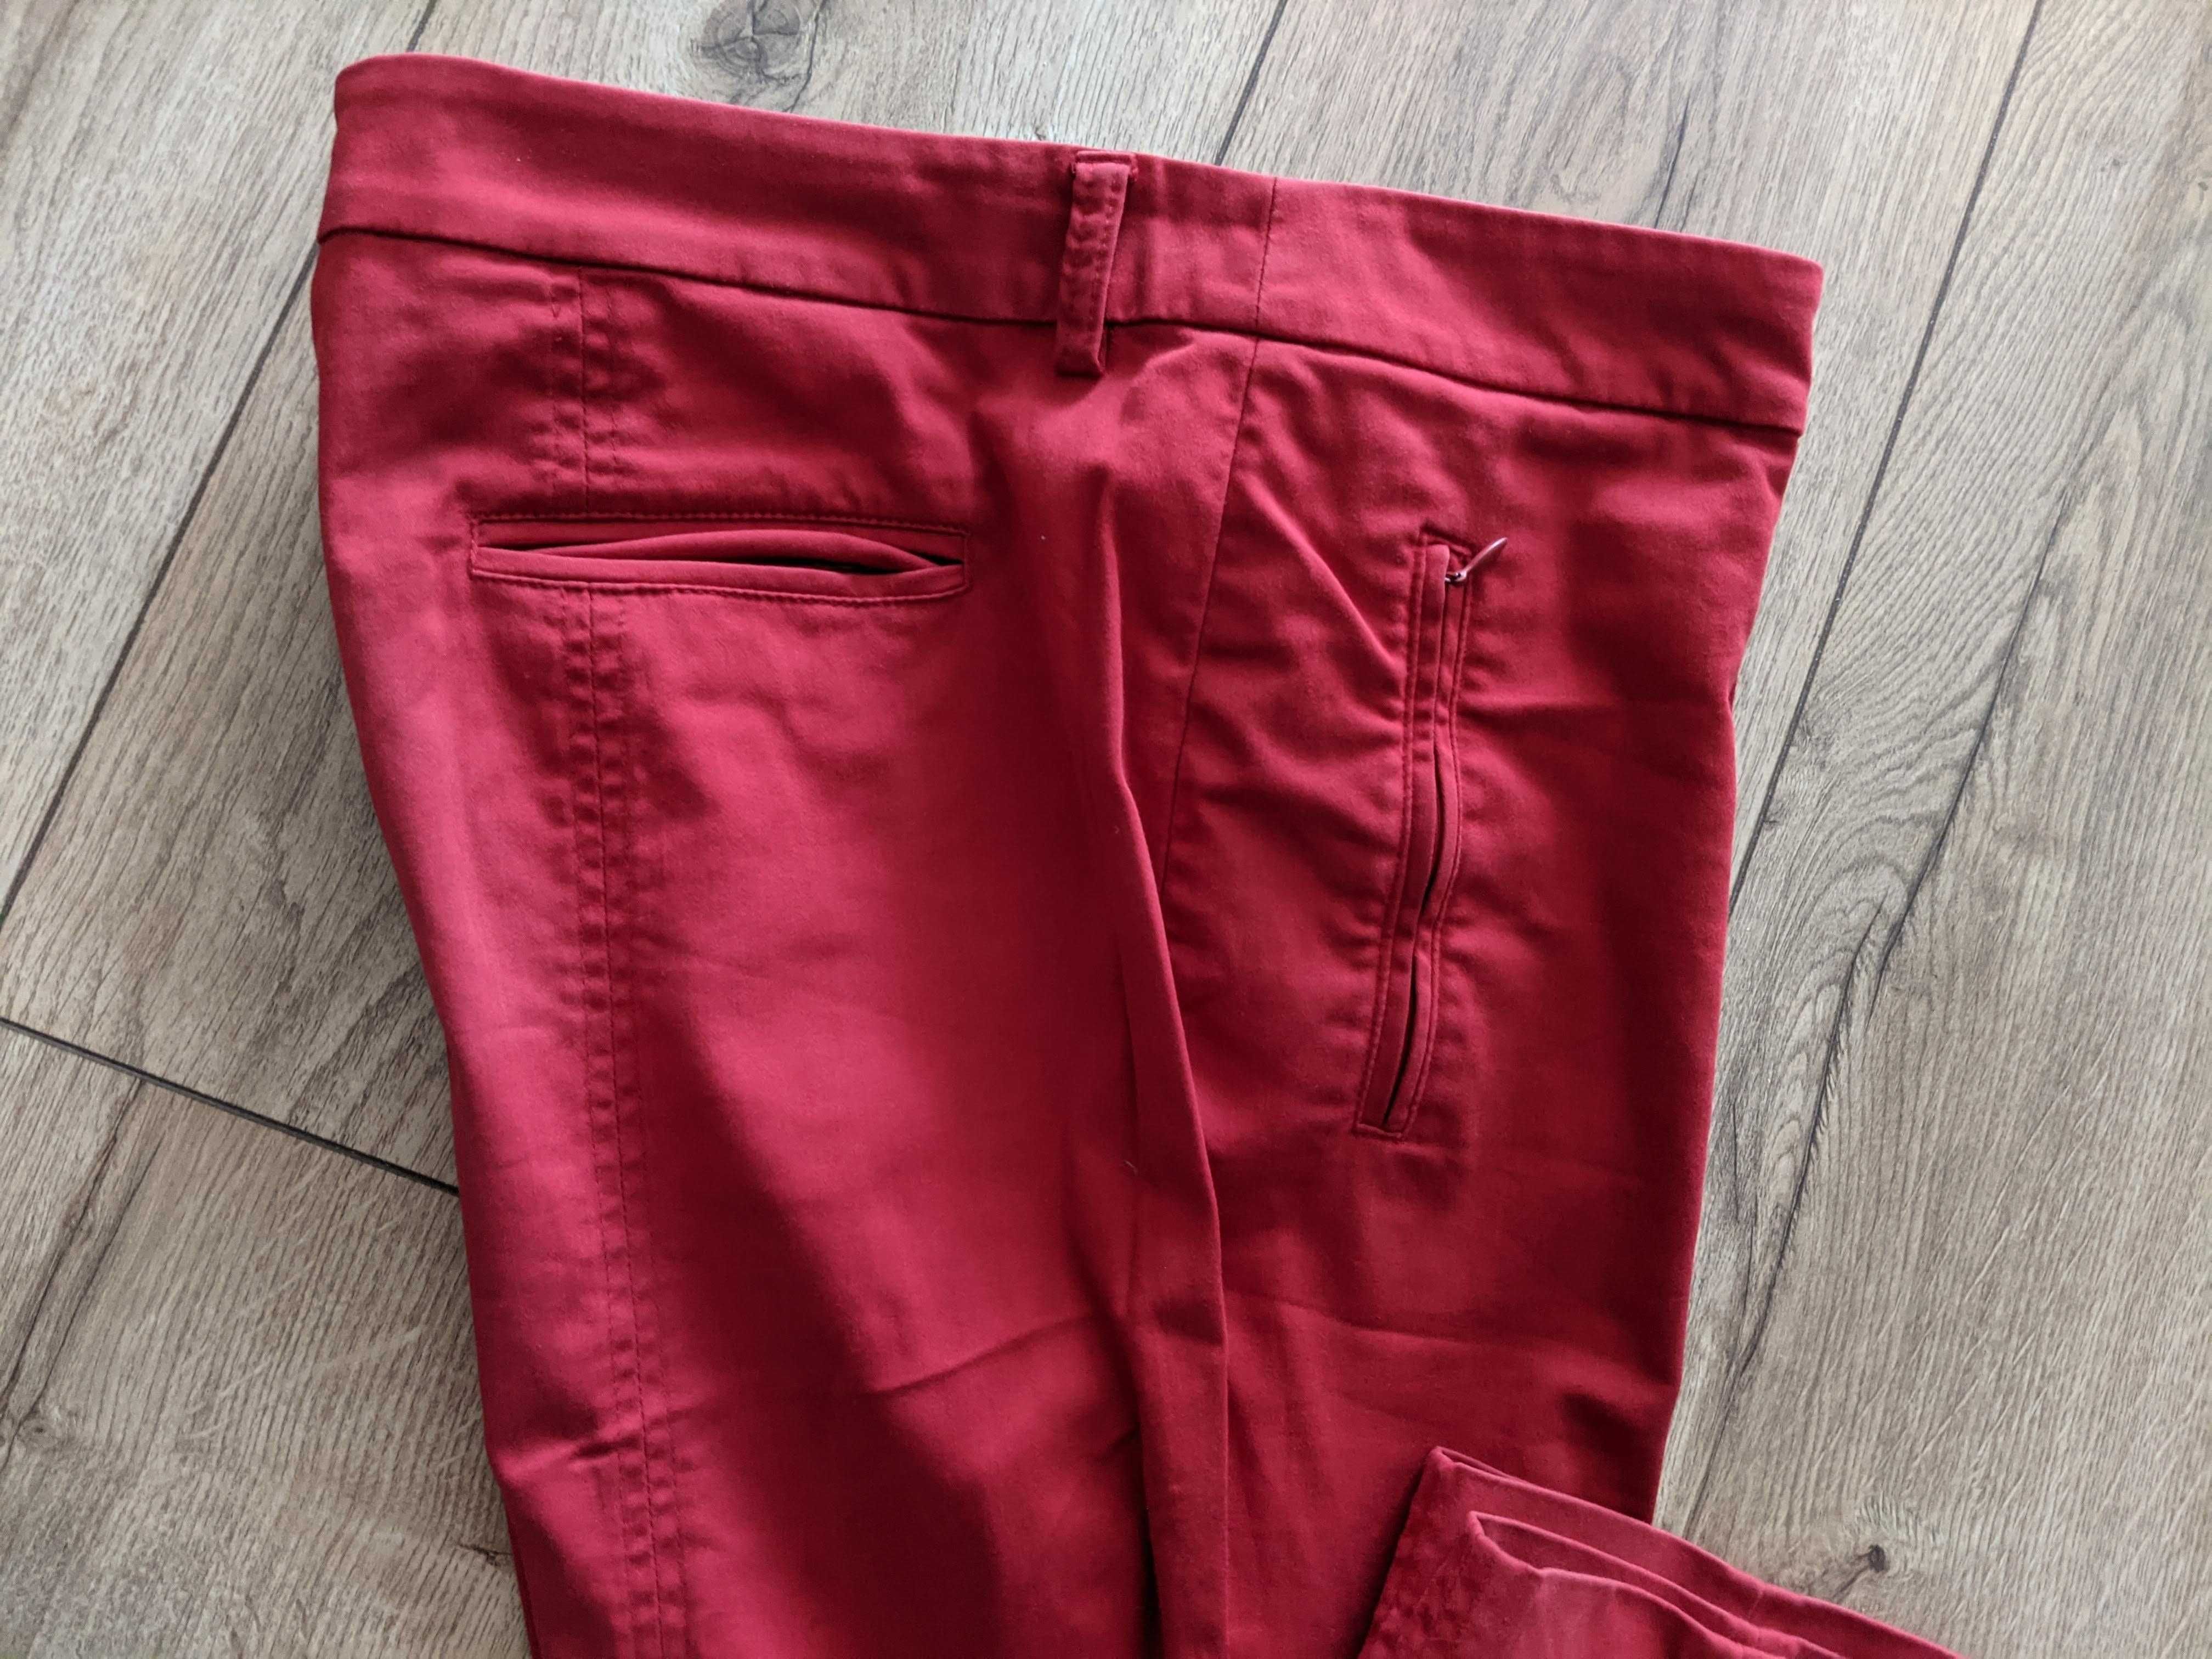 Spodnie damskie 44 czerwone lycrazgrabne 2XL pas94